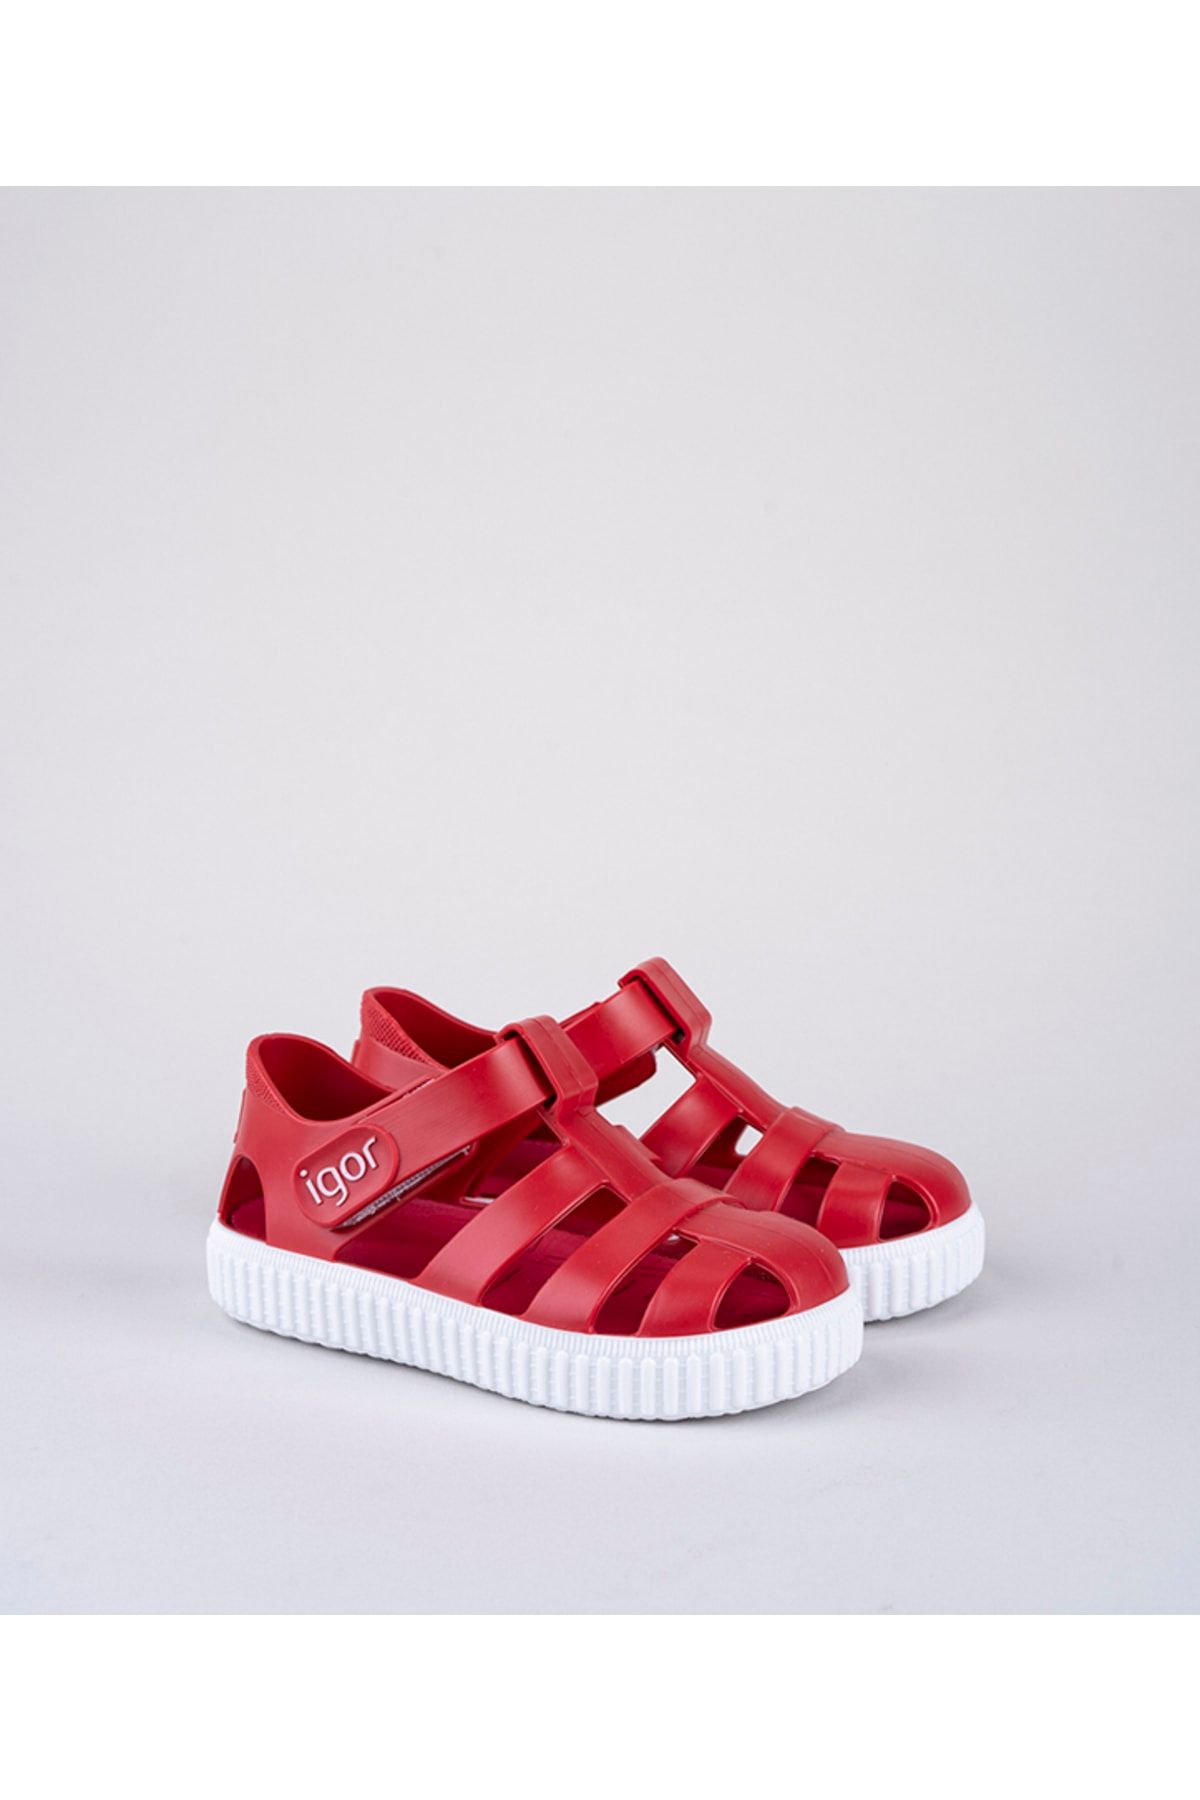 IGOR S10289 Nıco Rojo/kırmızı Çocuk Sandalet Igr005